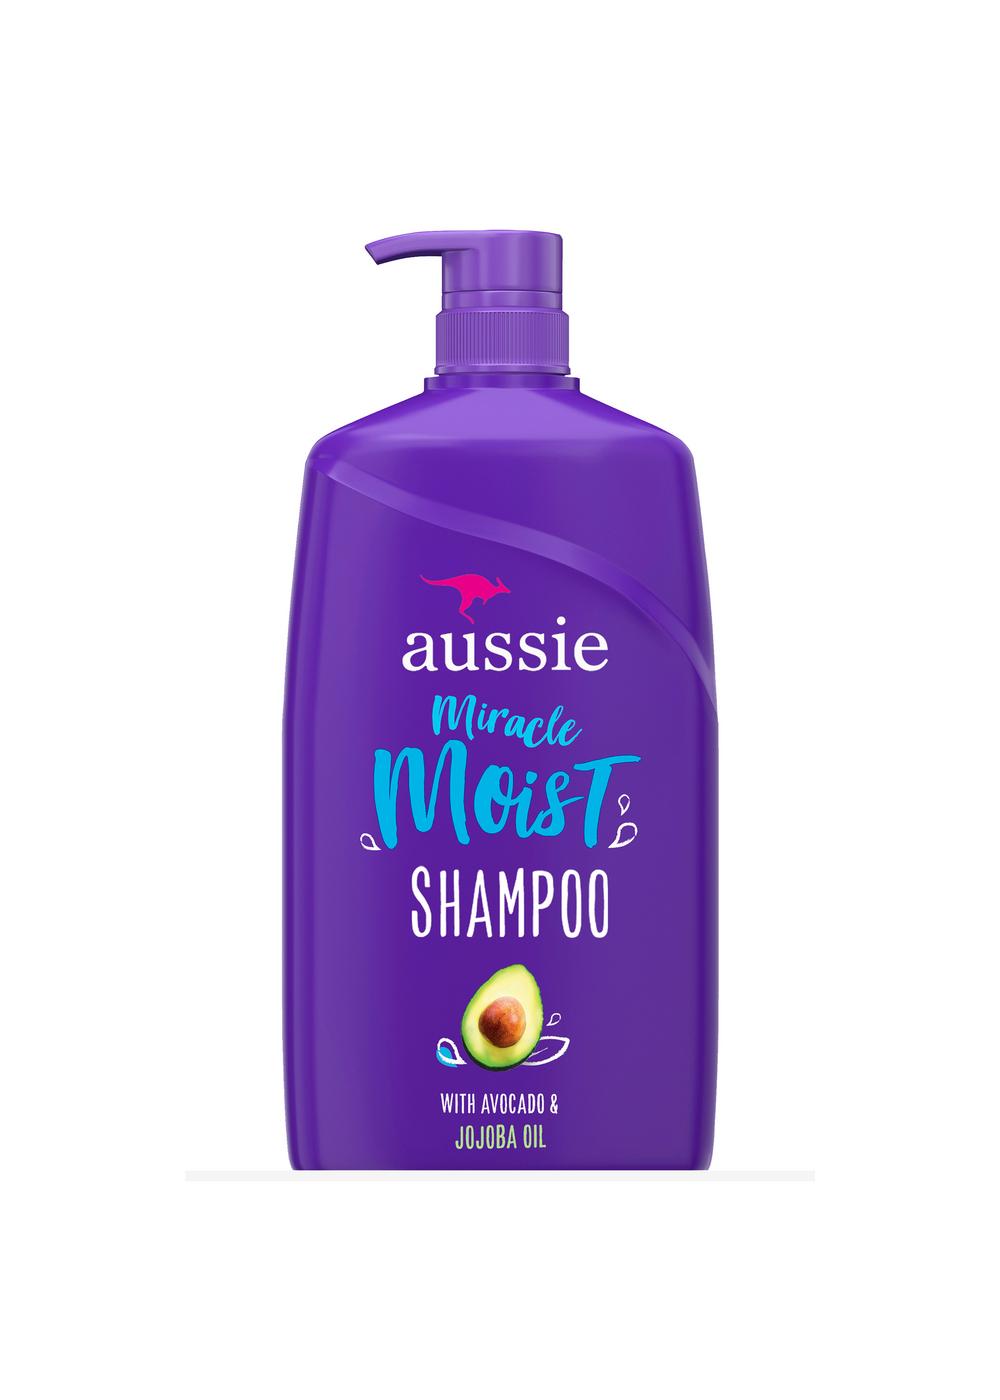 Aussie Miracle Moist Shampoo - Avocado & Jojoba Oil; image 6 of 9